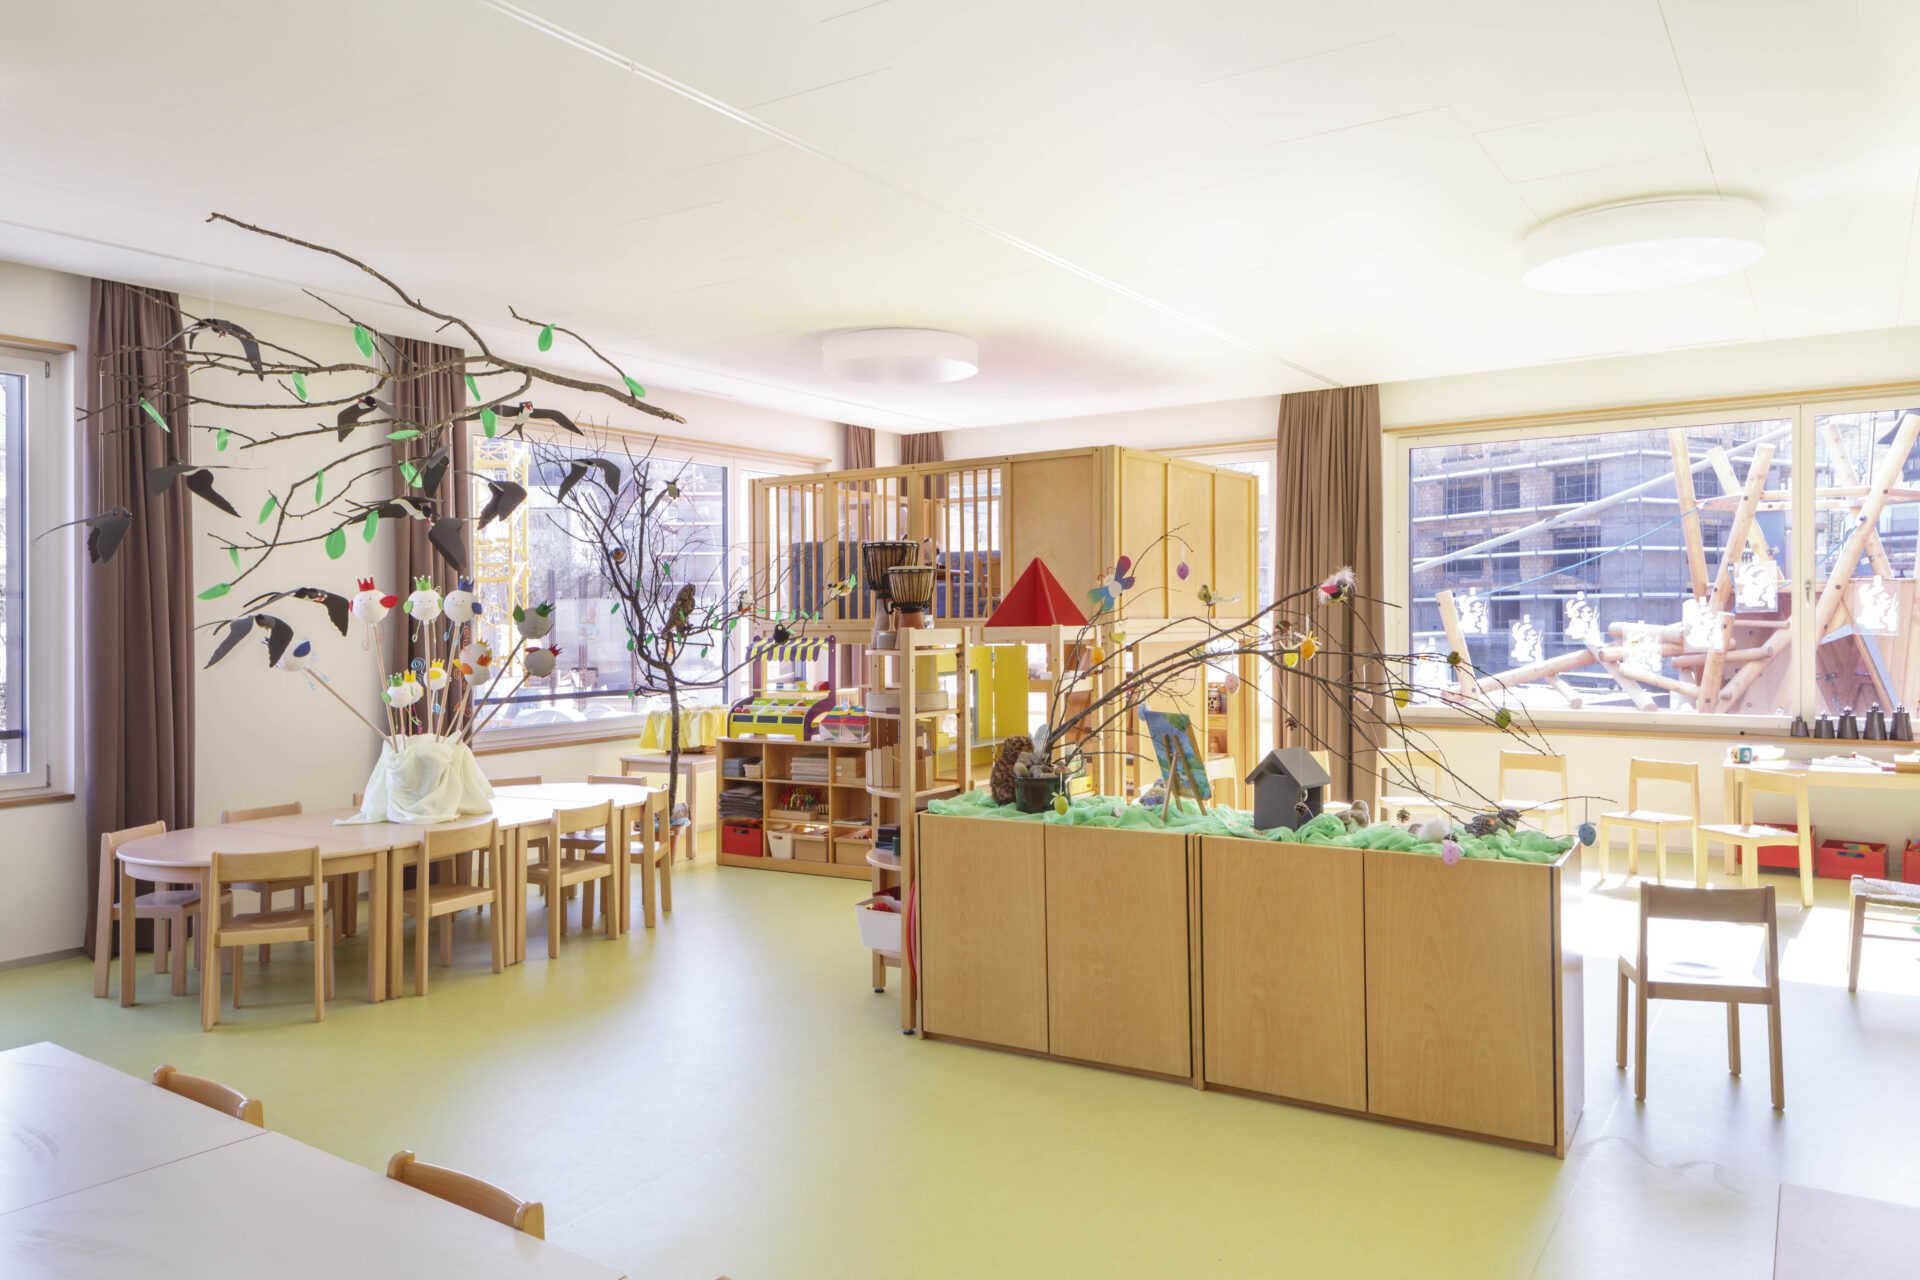 Alterswohnungen Wollerau, Kindergarten, marty architektur